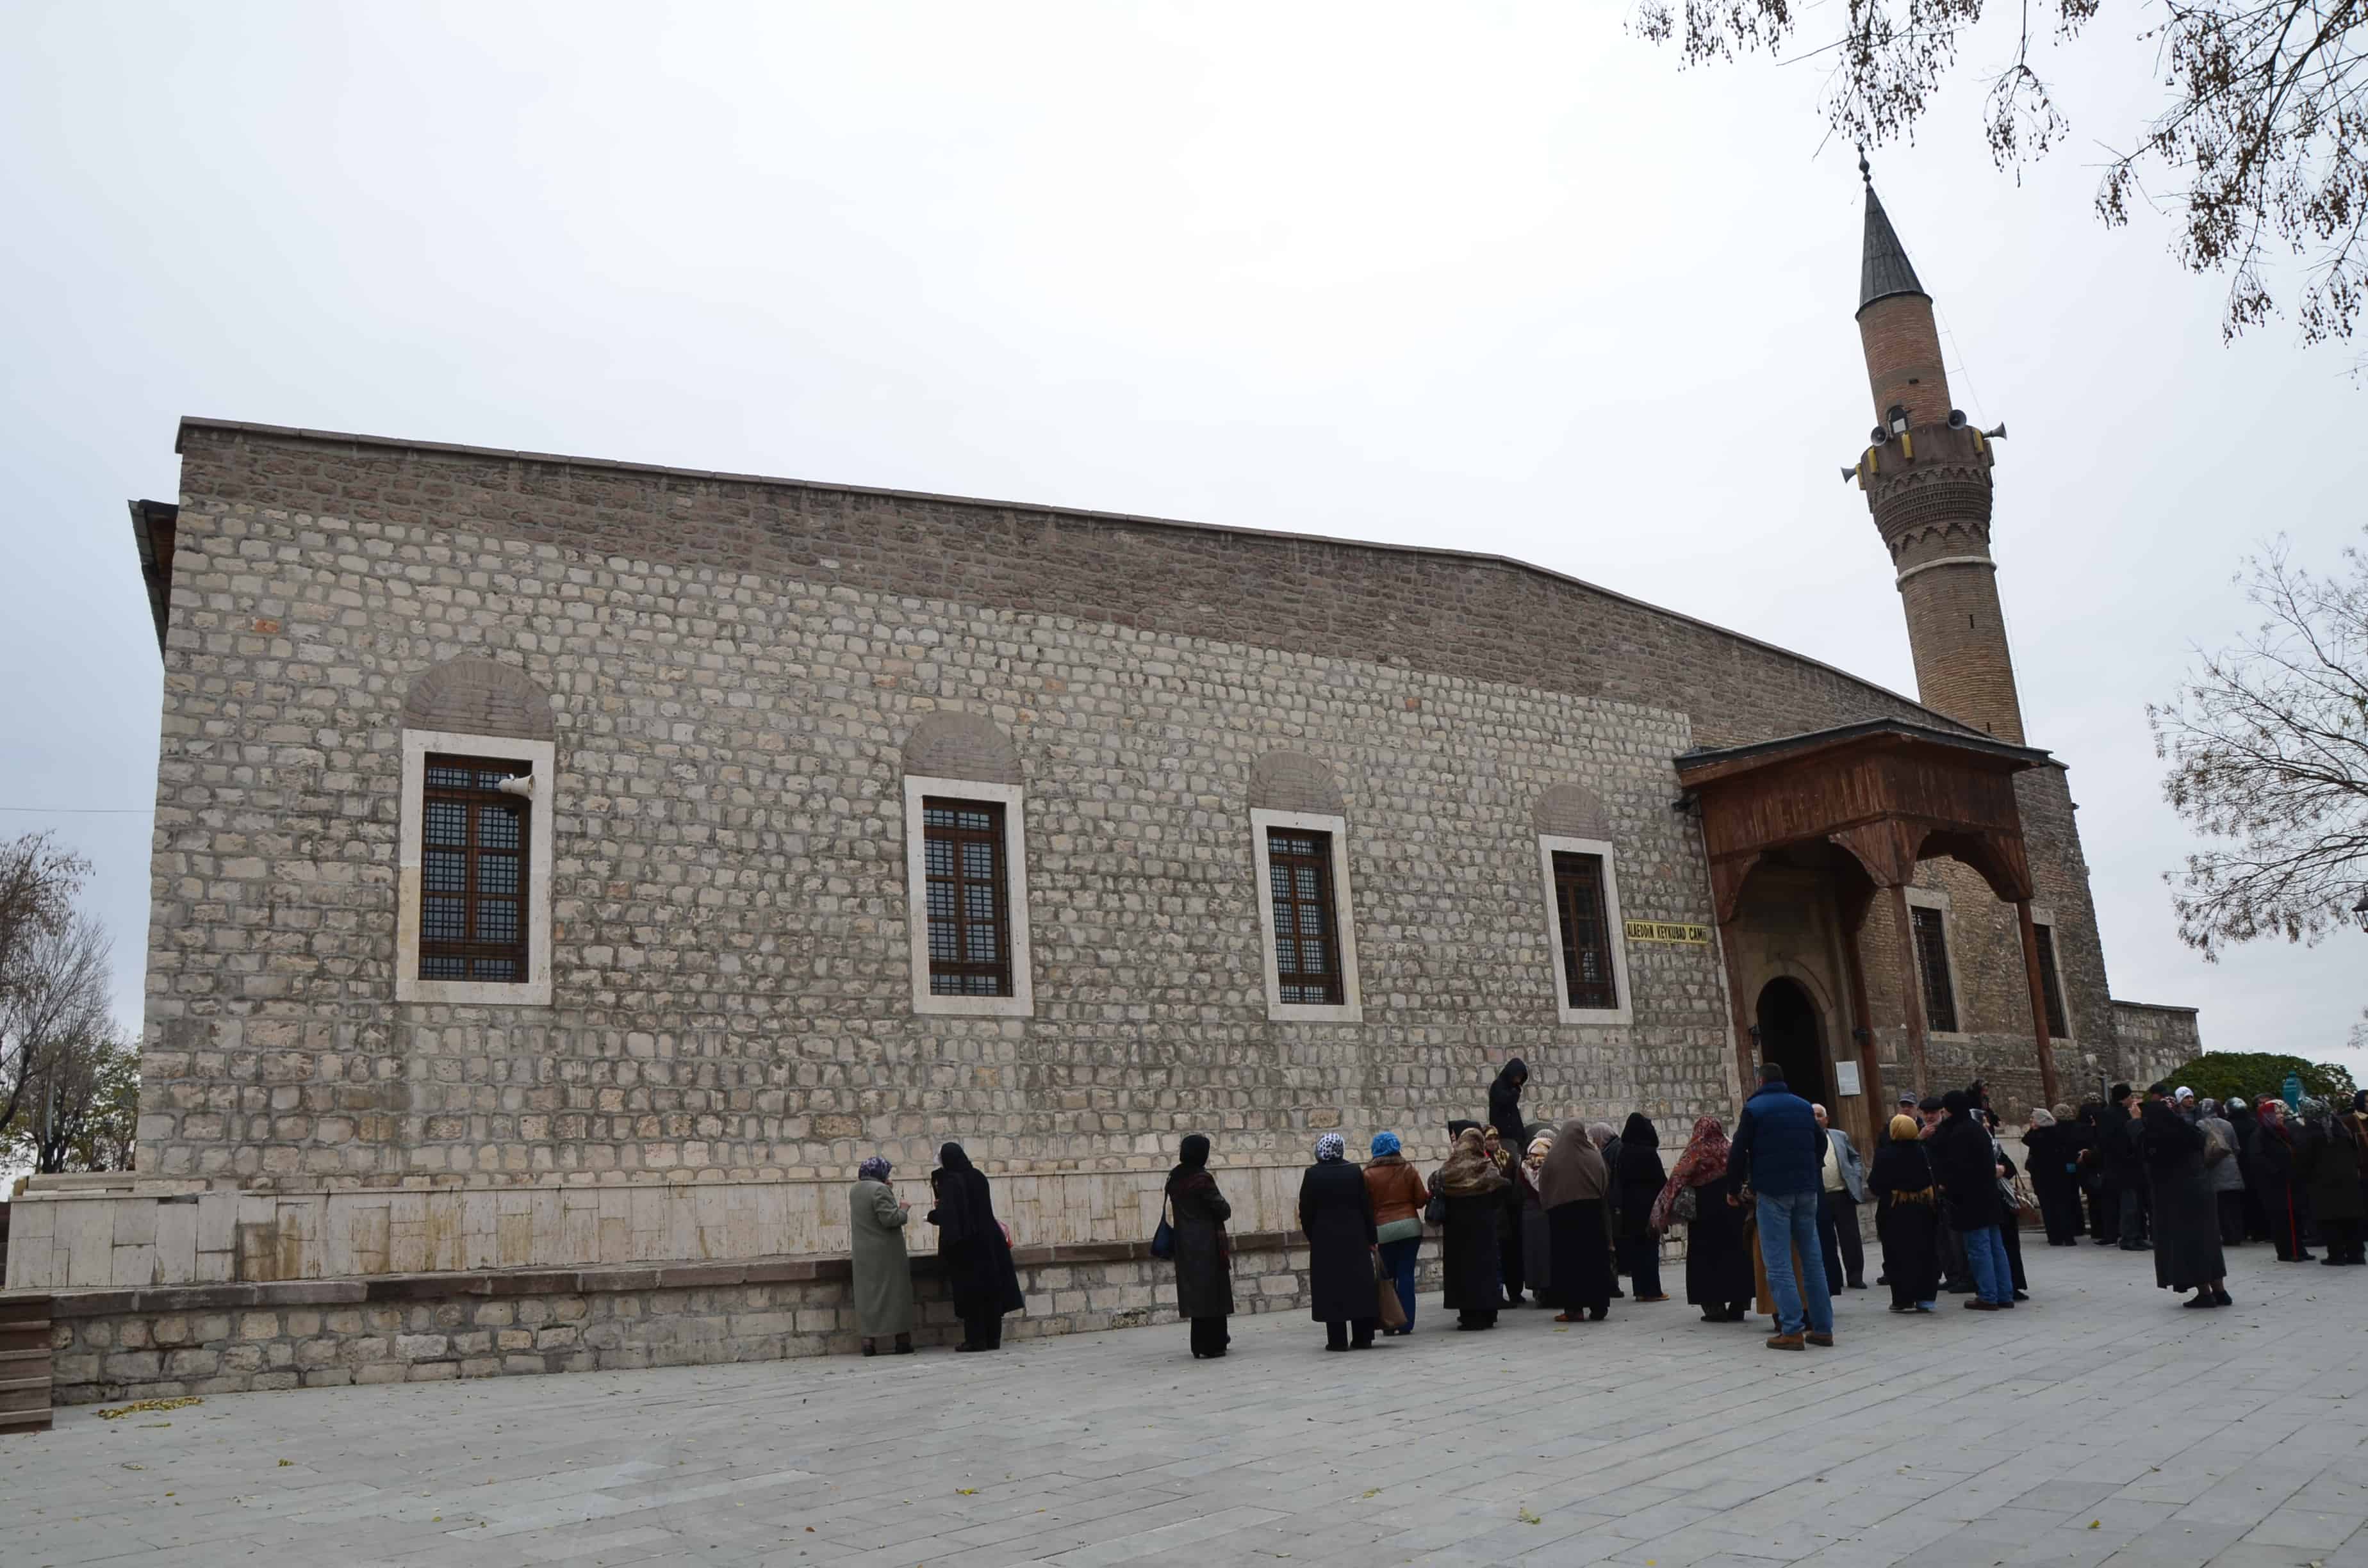 Alâeddin Camii in Konya, Turkey